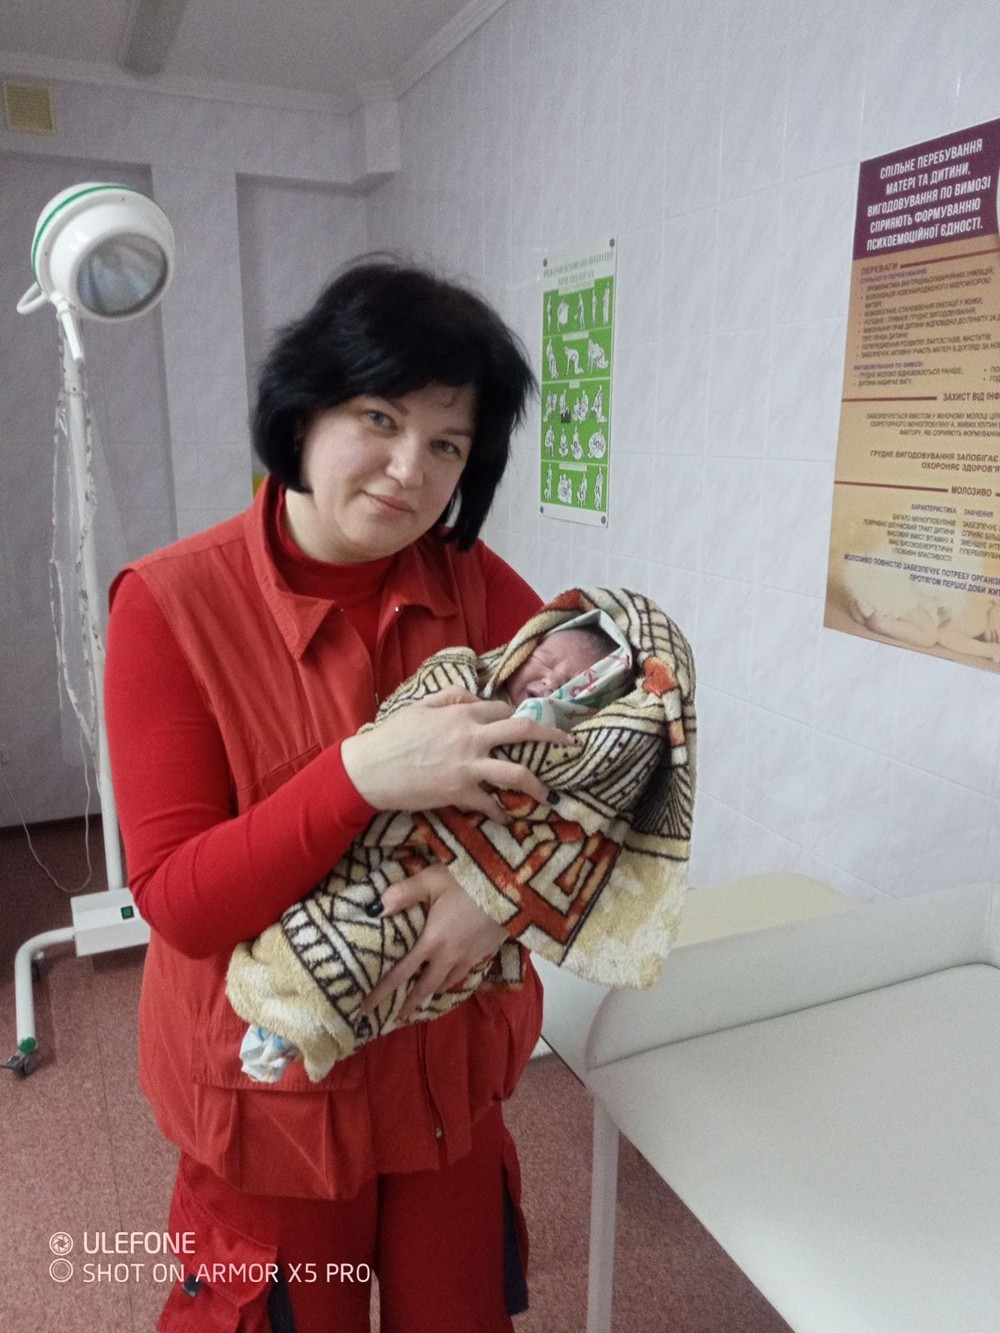 Мати ігнорувала передвісники пологів: на Дніпропетровщині медики «швидкої» допомогли народитися дівчинці